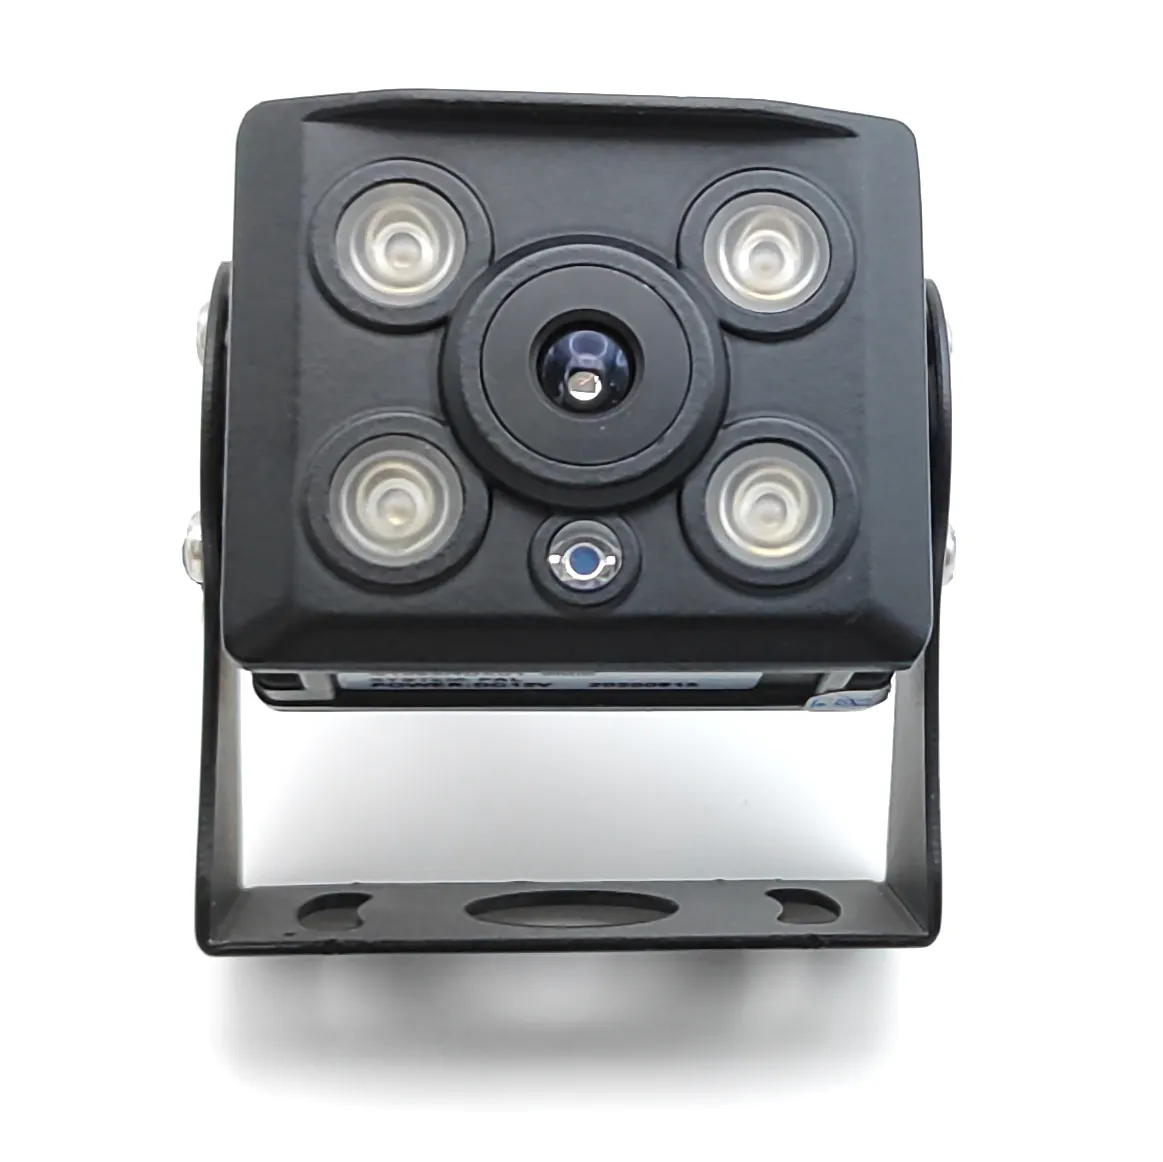 Araba taksi CCTV sisteminde araç güvenlik kamerası hareket algılama filo pano kameraları